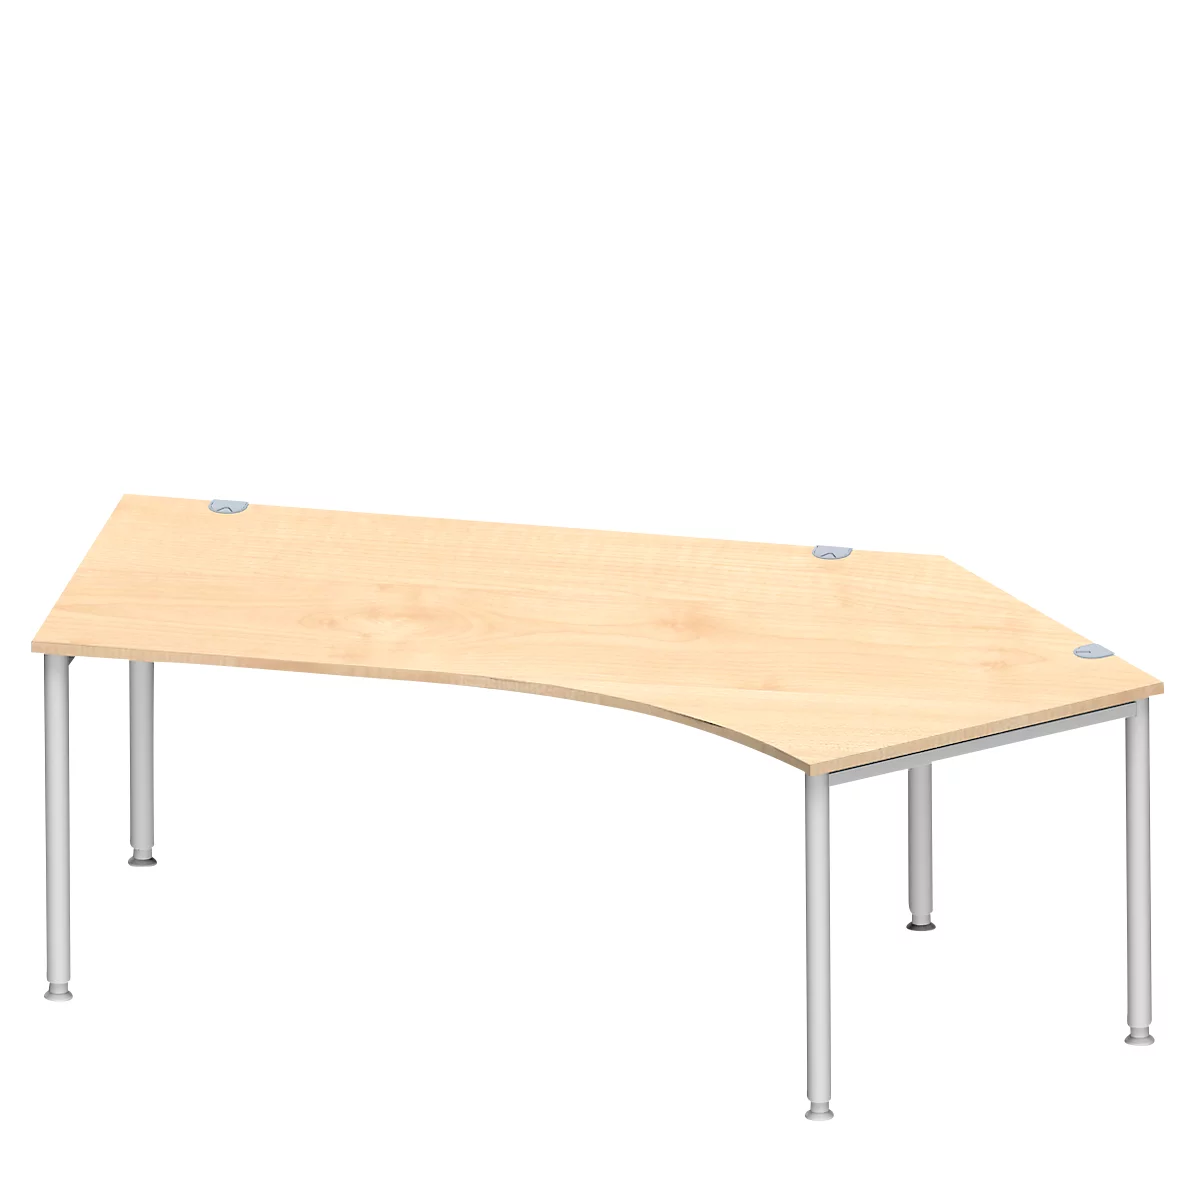 Schäfer Shop Genius escritorio angular MODENA FLEX 135°, fijación derecha, arce/aluminio blanco